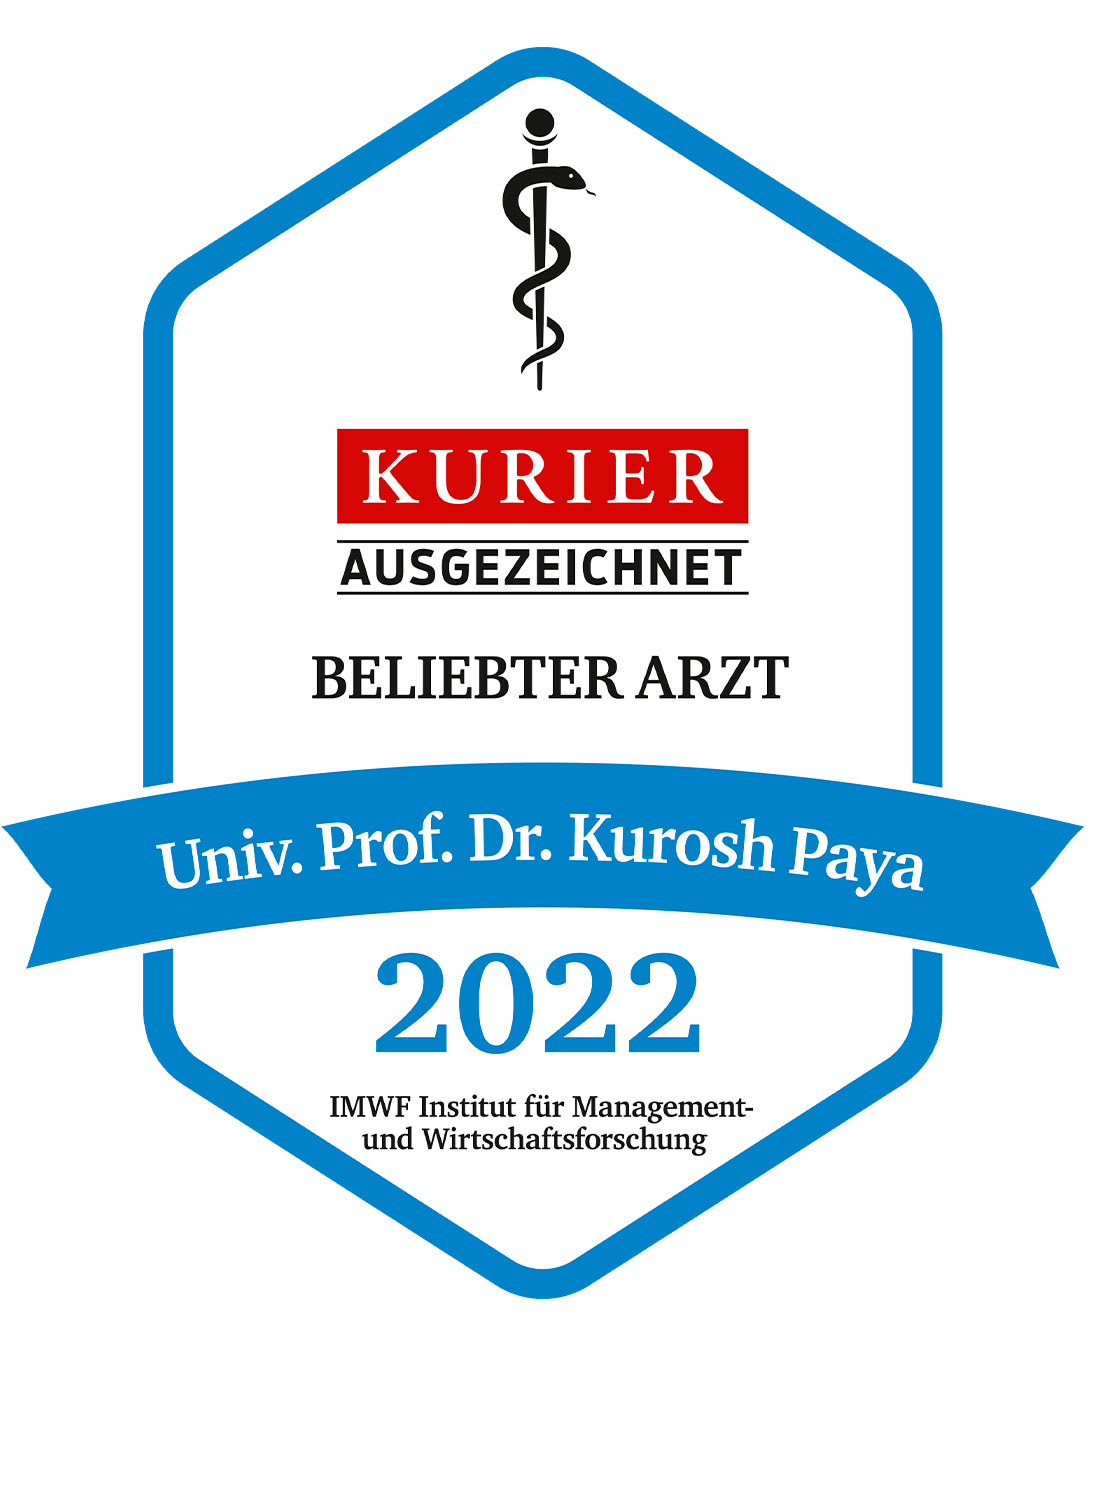 Beliebter Arzt Univ.Prof.Dr. Kurosh Paya "Kurier"